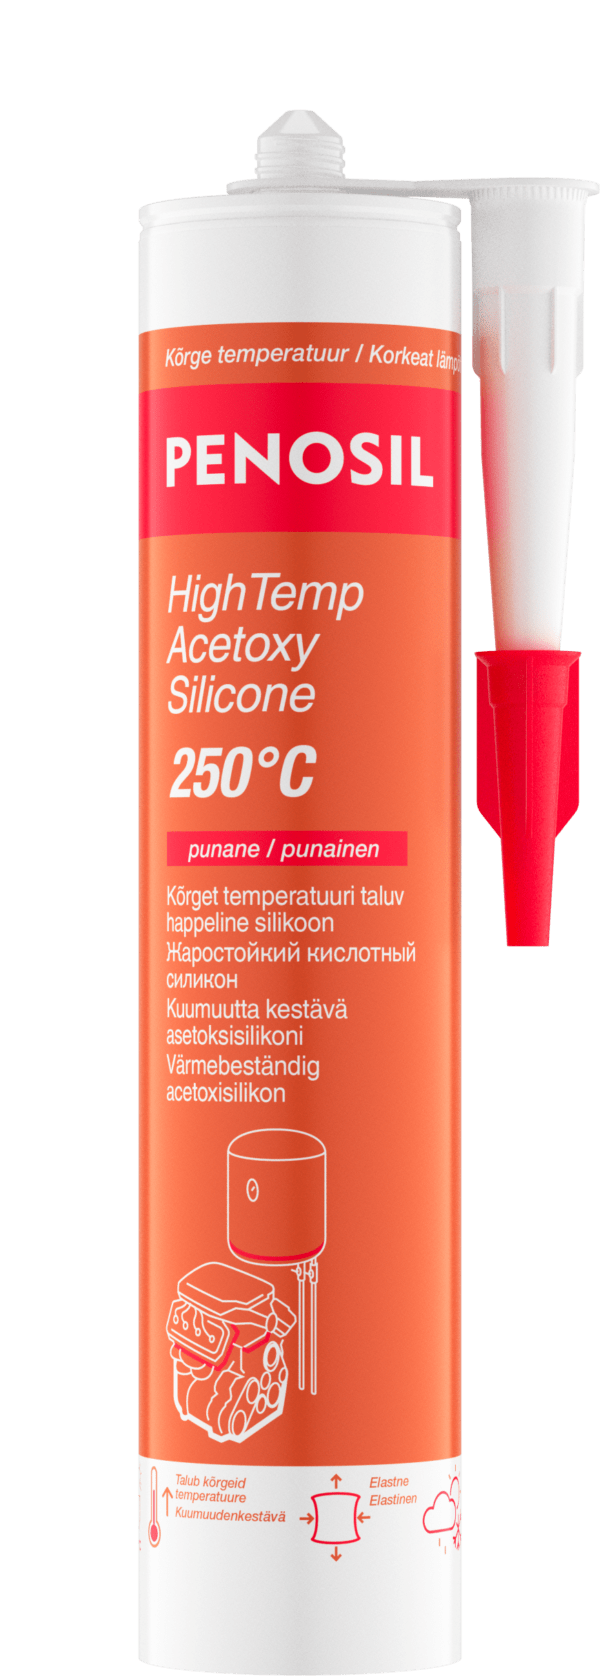 Penosil HighTemp_Acetoxy_Silicone_250C_EE_FI